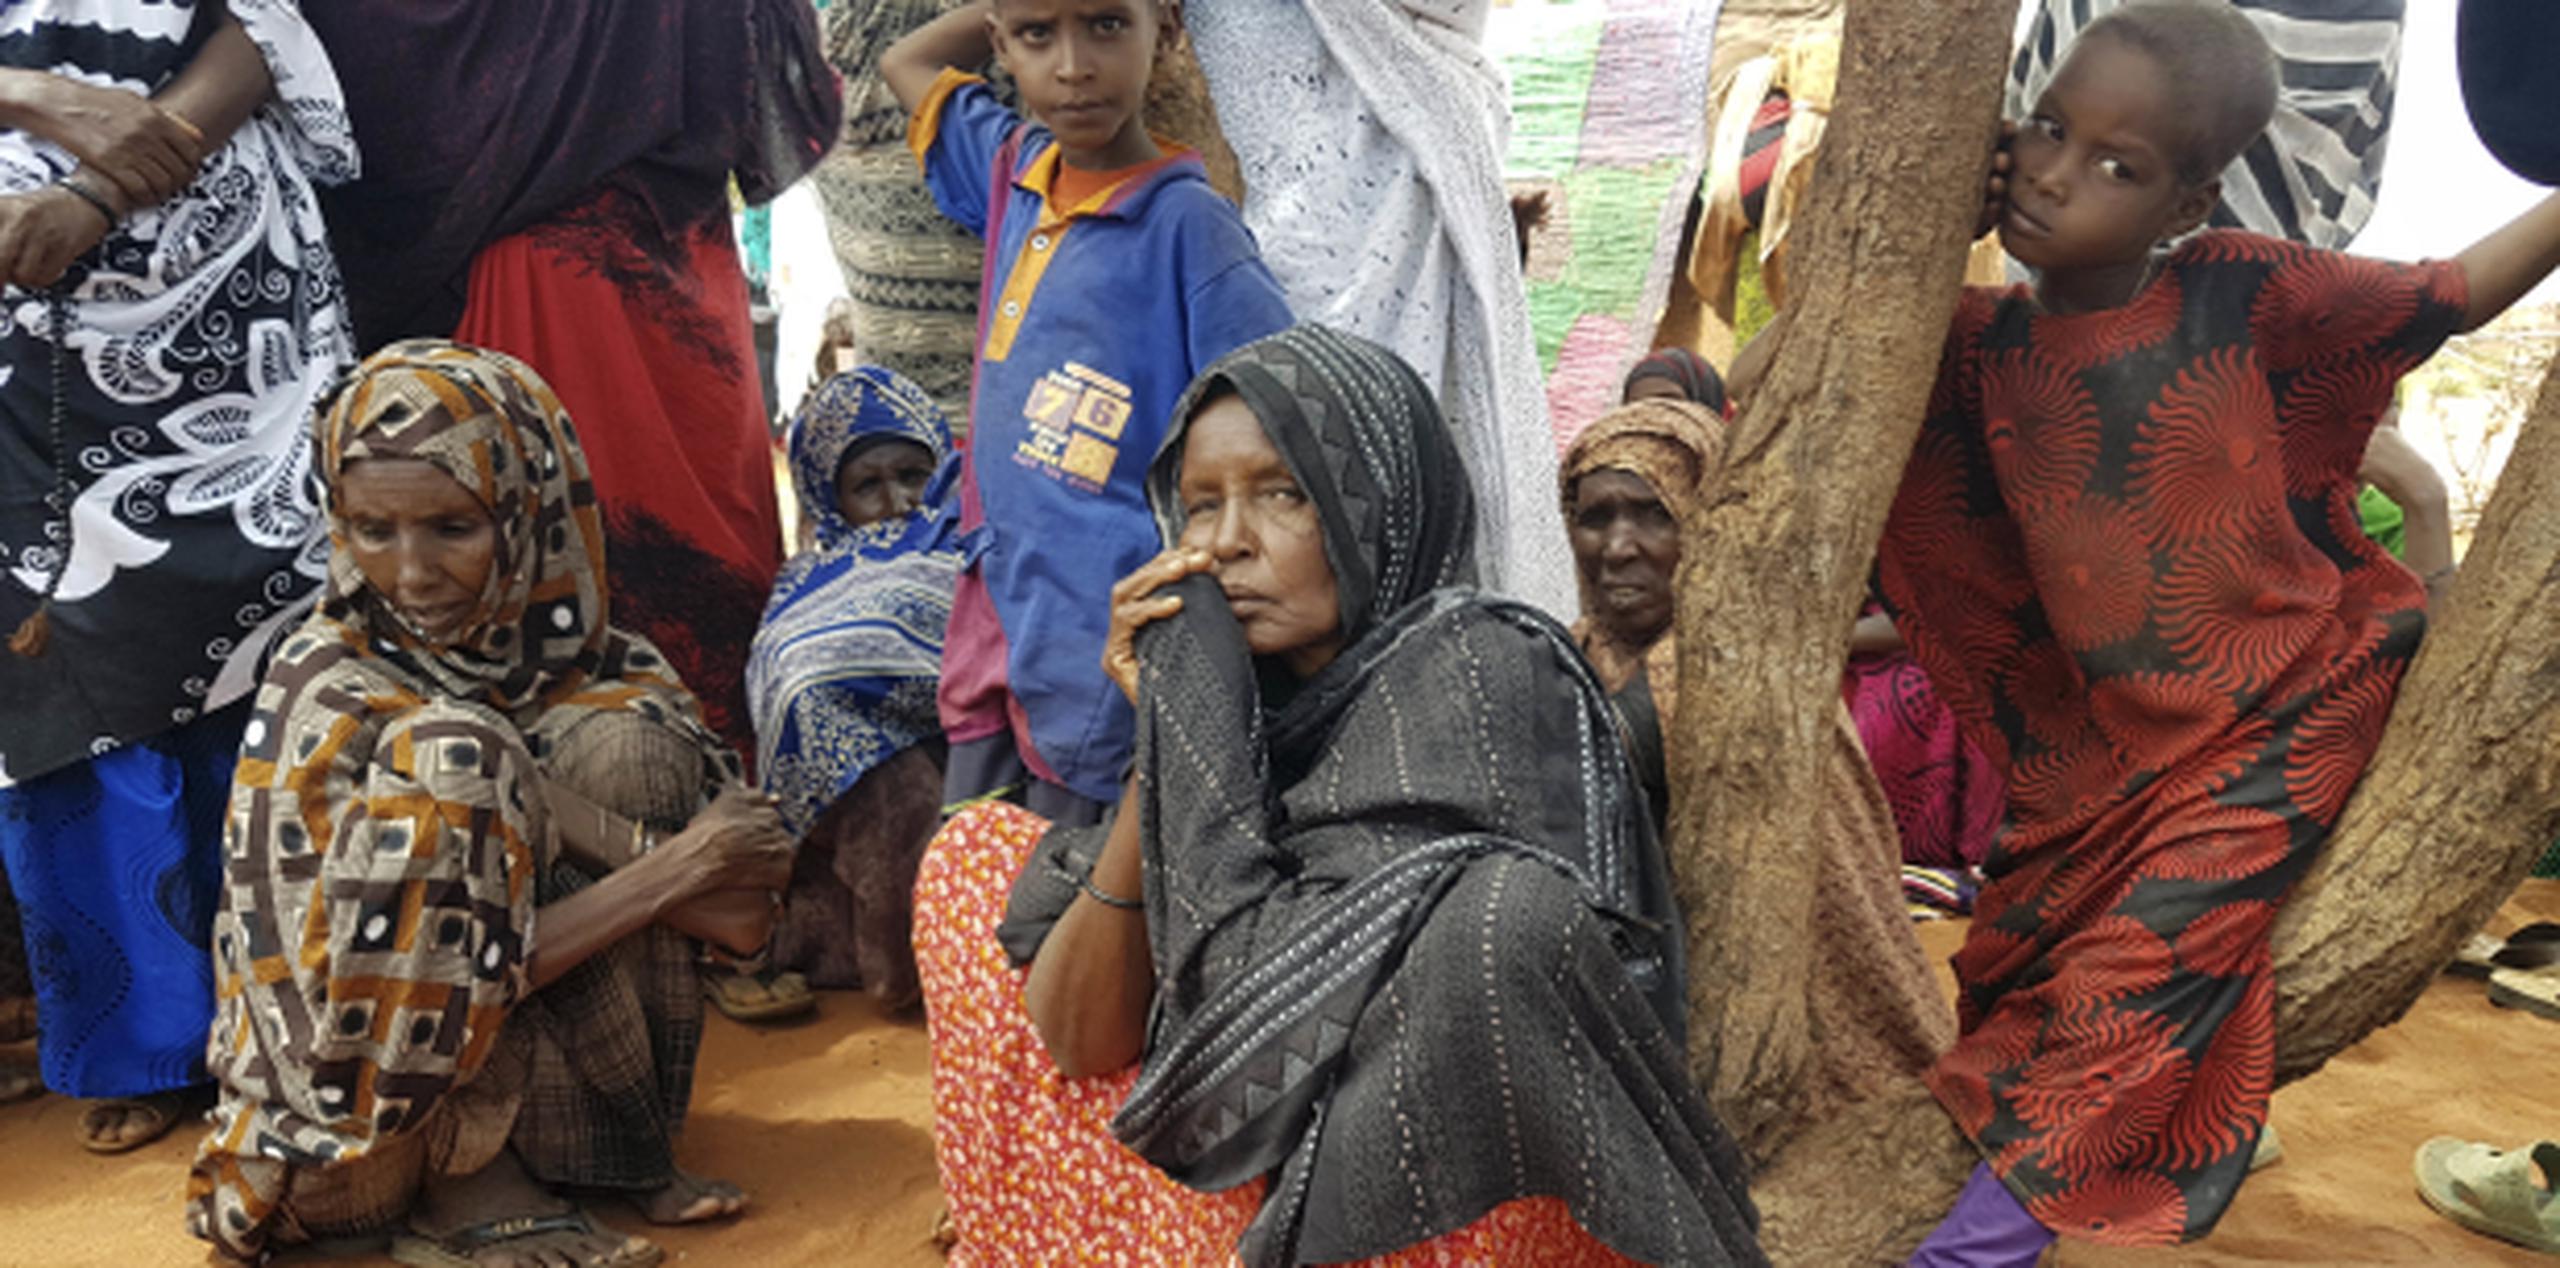 Decenas de miles de personas en el este de Etiopía se han visto forzadas a acudir a refugios en busca de alimentos a consecuencia de una grave sequía. (AP Photo/Elias Meseret)